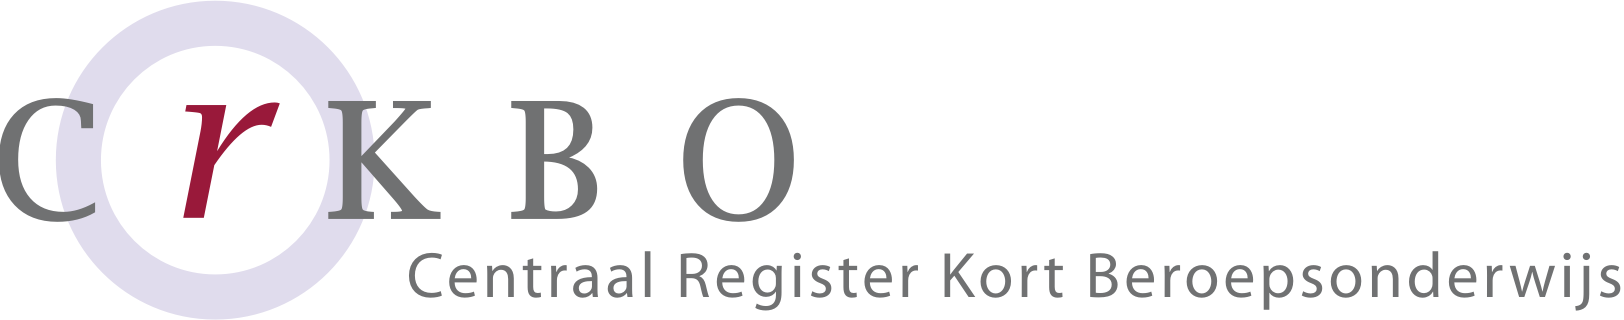 Logo Centraal Register Kort Beroepsonderwijs (CRKBO).